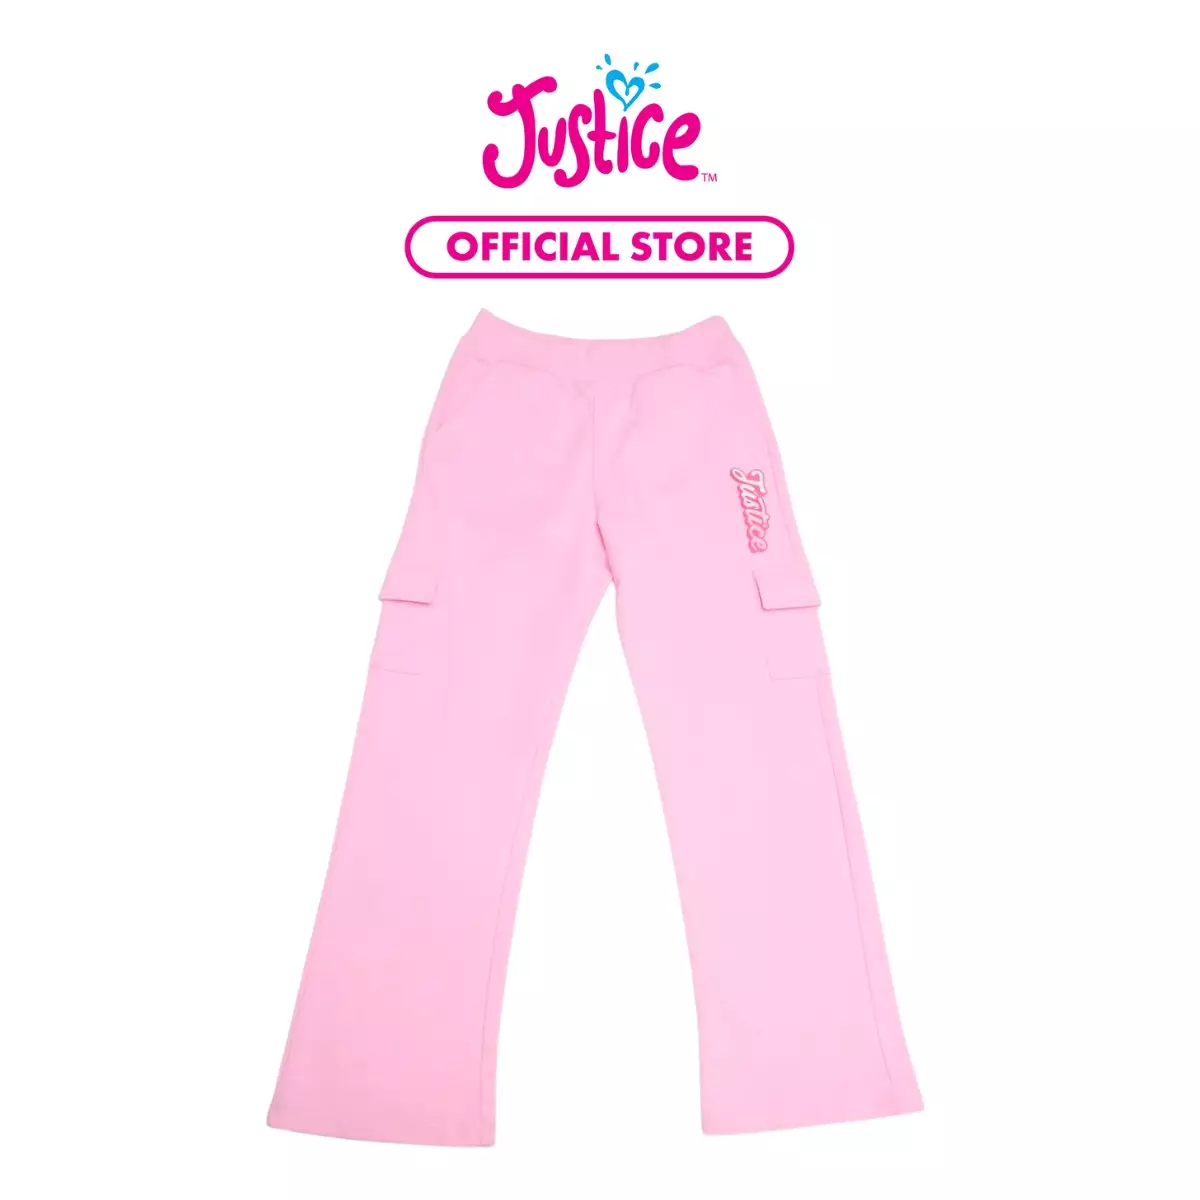 Promo Justice 3 Pack Girls Undies - Pakaian Dalam Anak Perempuan (Multi) -  10 Tahun Diskon 50% di Seller Justice Official Store - Cileungsi, Kab.  Bogor